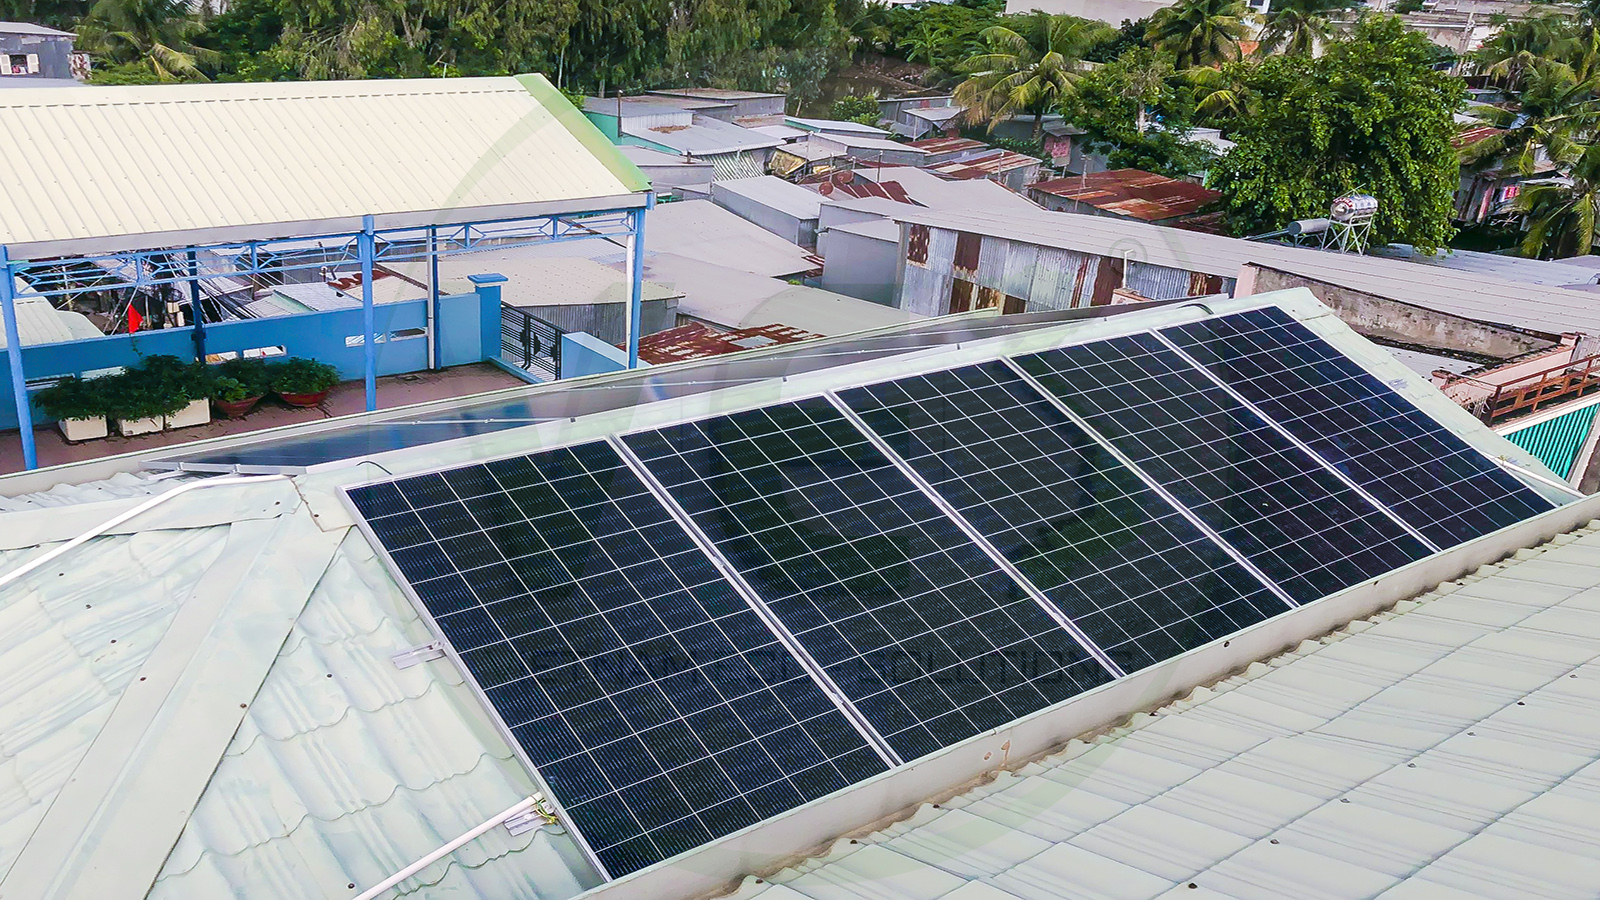 VES lắp đặt điện năng lượng mặt trời cho khách hàng anh Minh tại Tỉnh An Giang